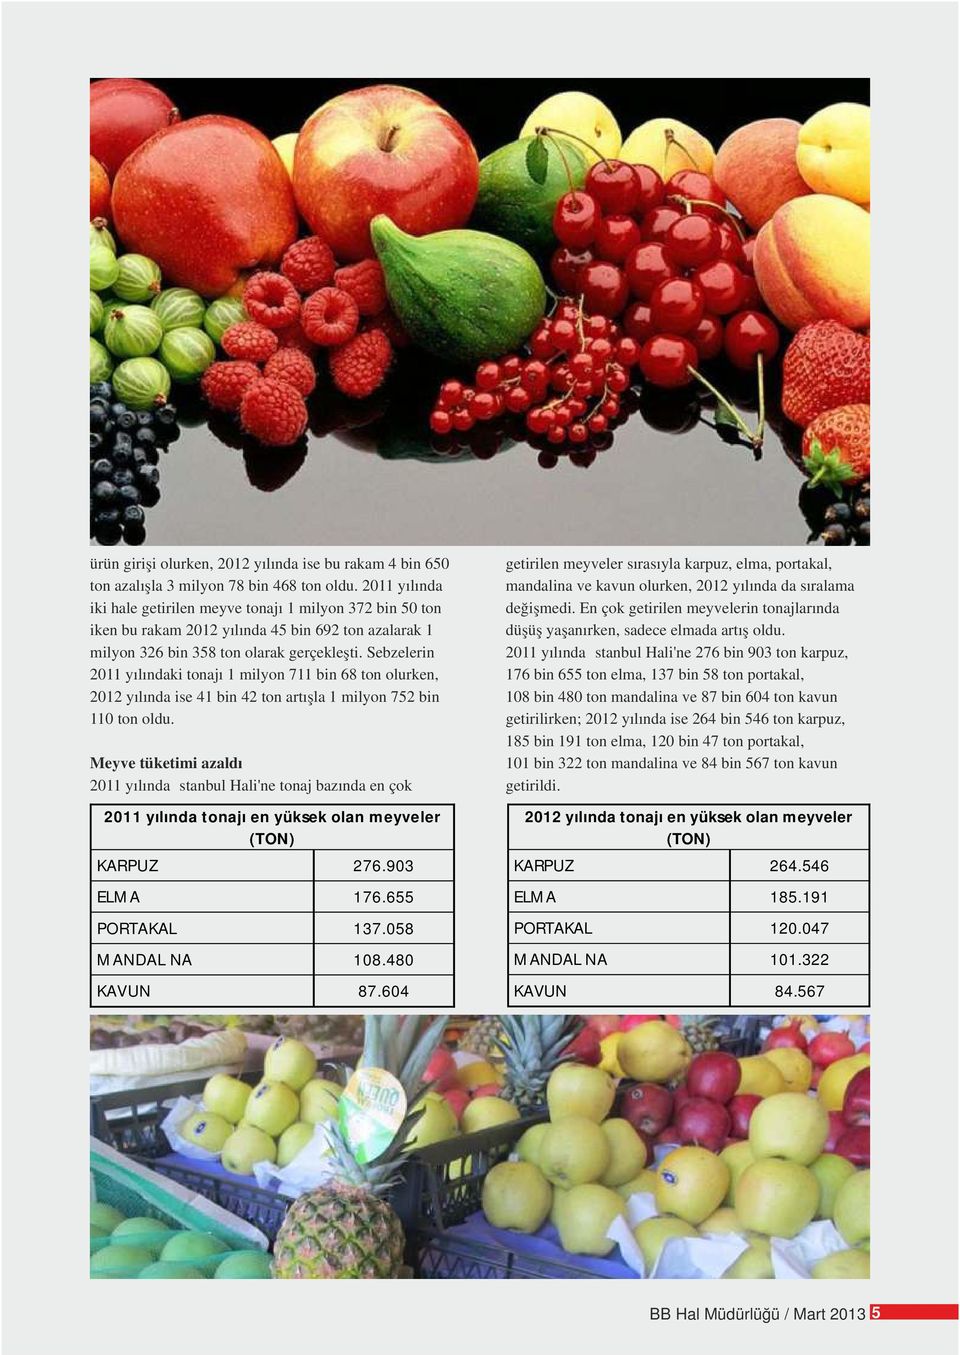 En çok getirilen meyvelerin tonajlarında iken bu rakam 2012 yılında 45 bin 692 ton azalarak 1 düşüş yaşanırken, sadece elmada artış oldu. milyon 326 bin 358 ton olarak gerçekleşti.